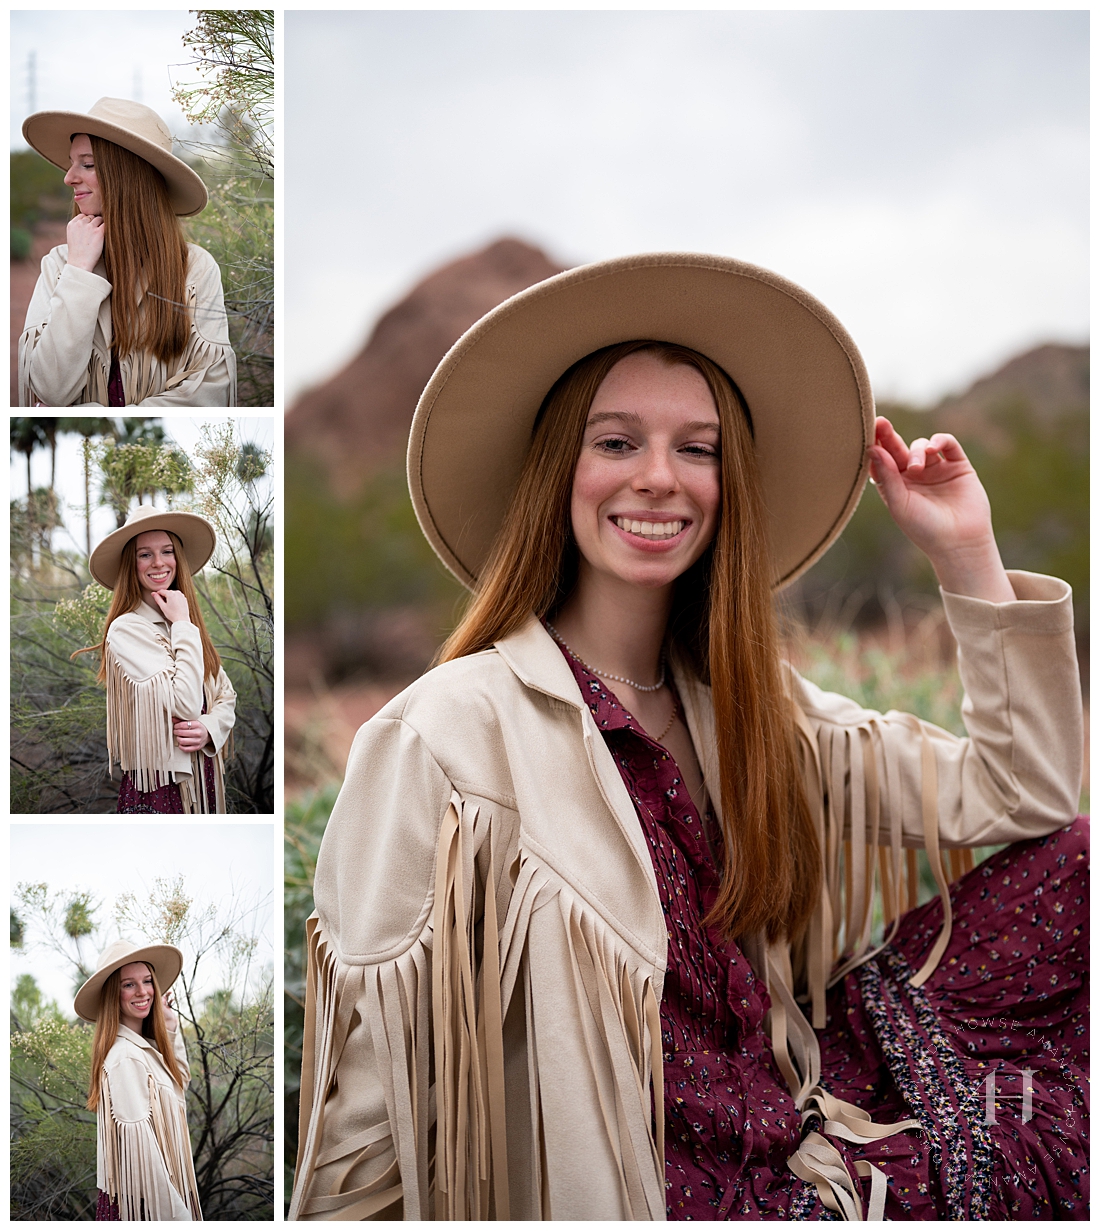 Senior Photo Education in Arizona | High School Senior Fashion Guide | Photographed by the Best Tacoma, Washington Senior Photographer Amanda Howse Photography